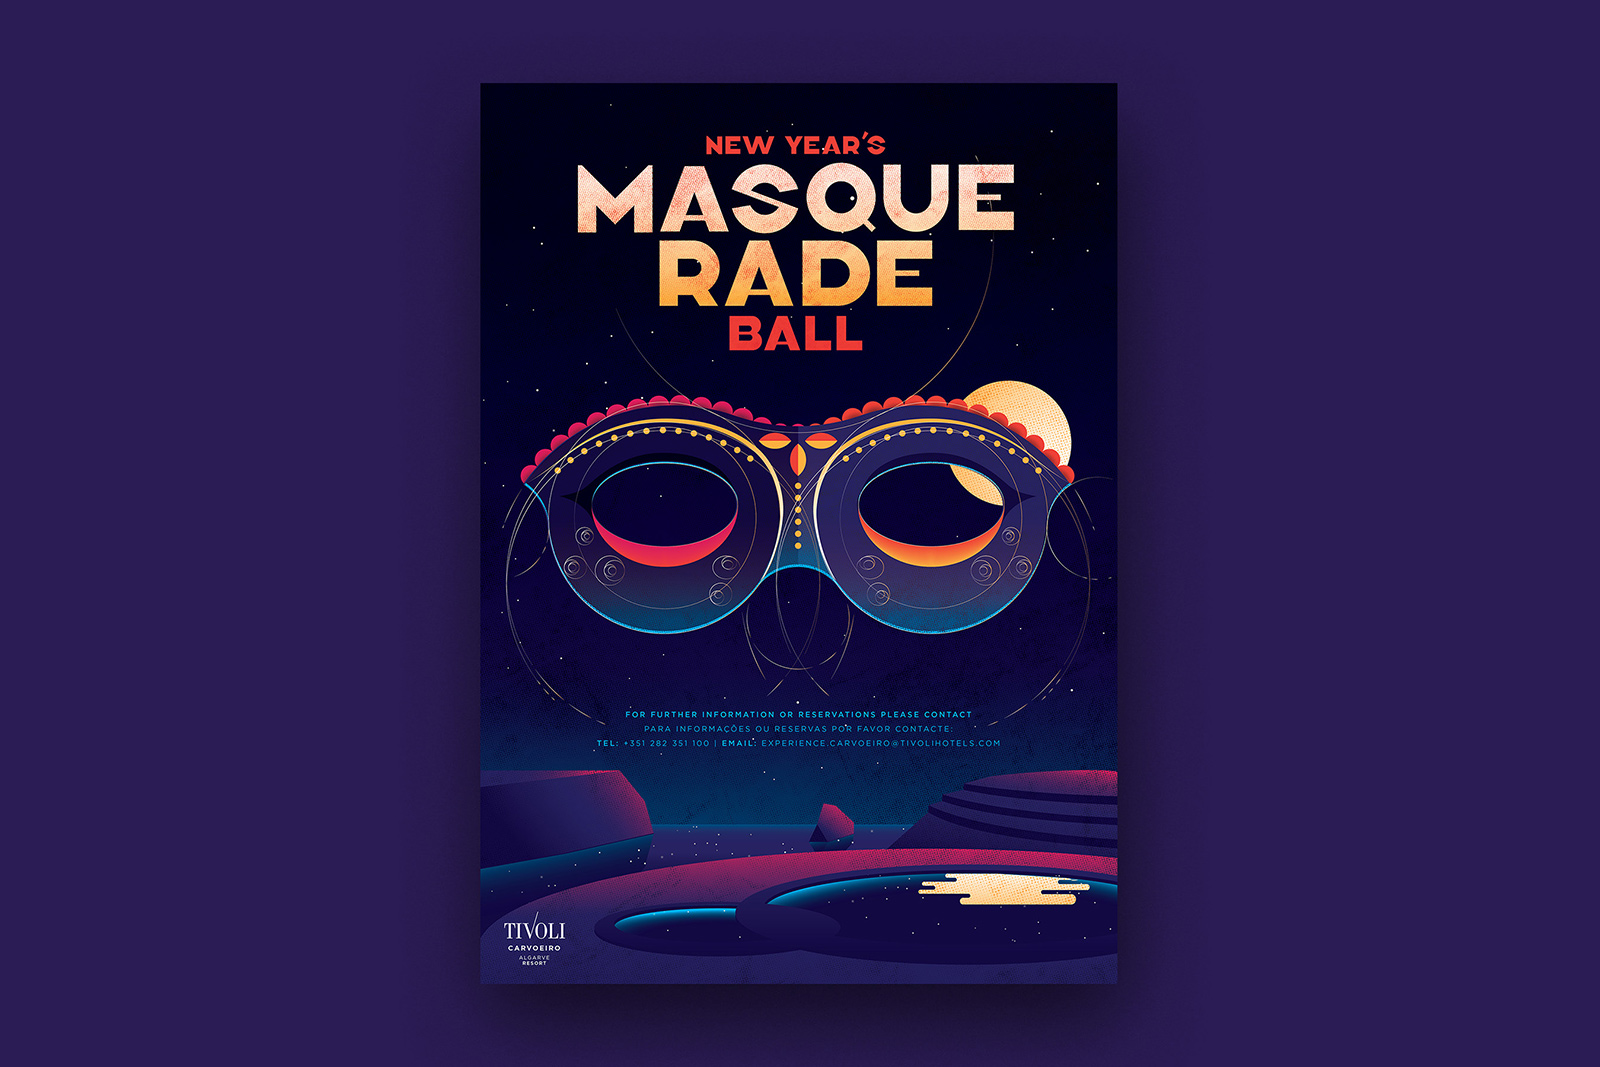 "Masquerade Ball" event at Tivoli Hotels & Resorts